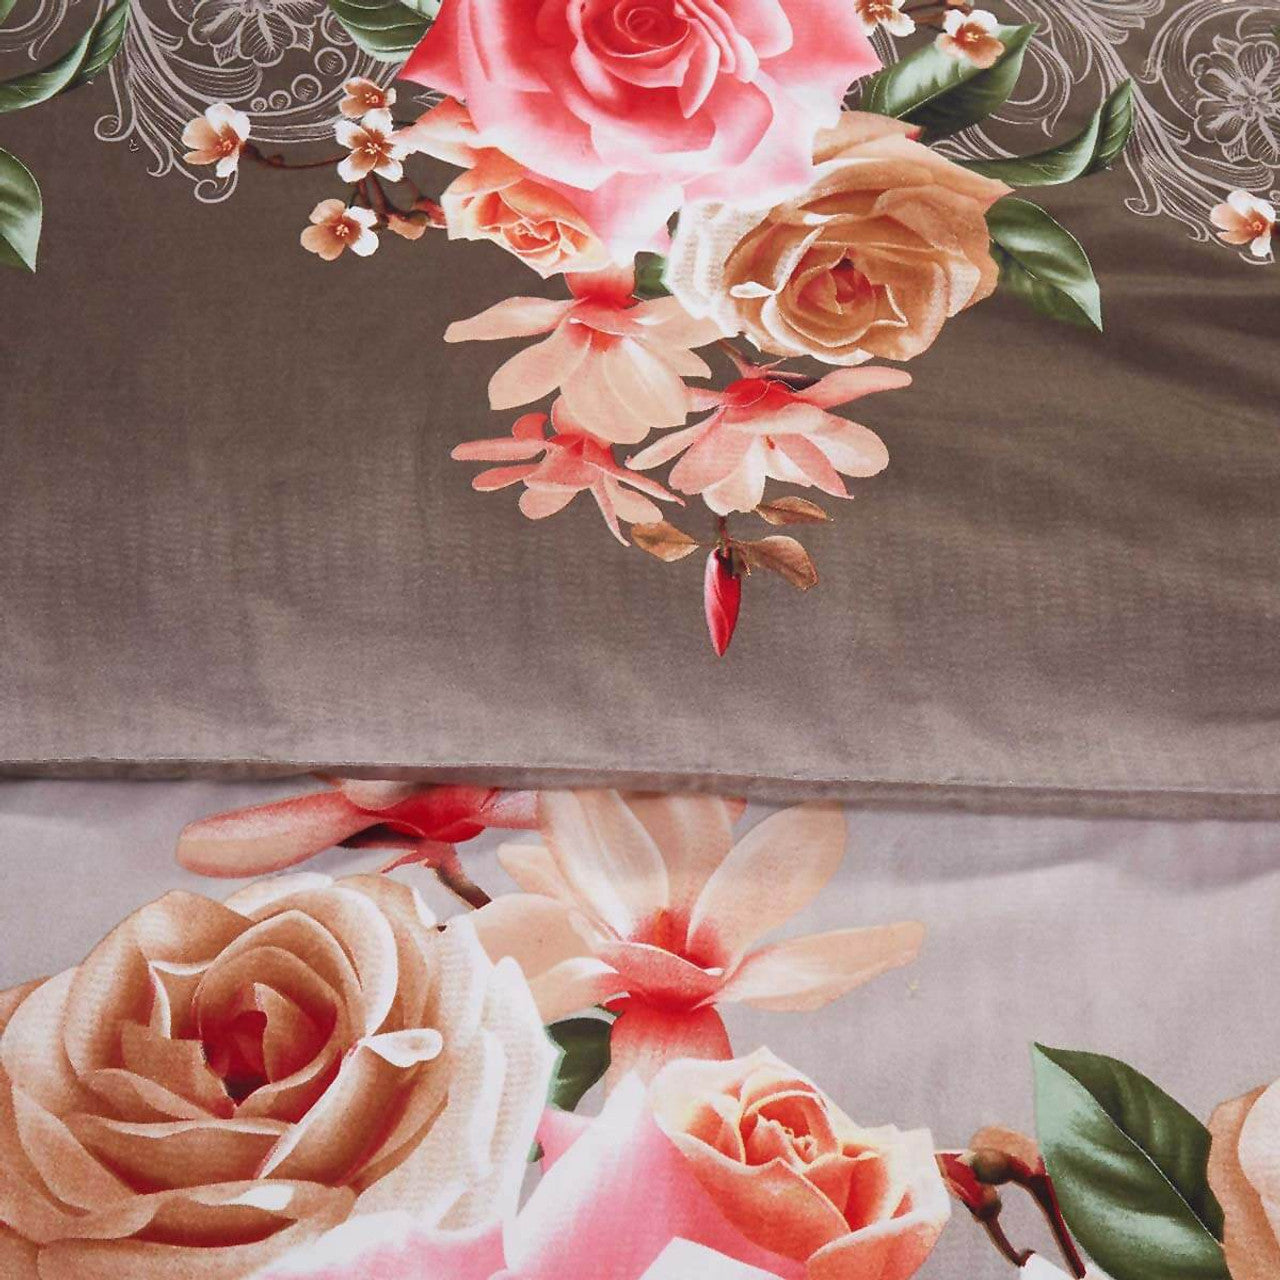 Duvet Cover Set, King Size Floral Bedding, Dolce Mela - Rose Medley DM708K